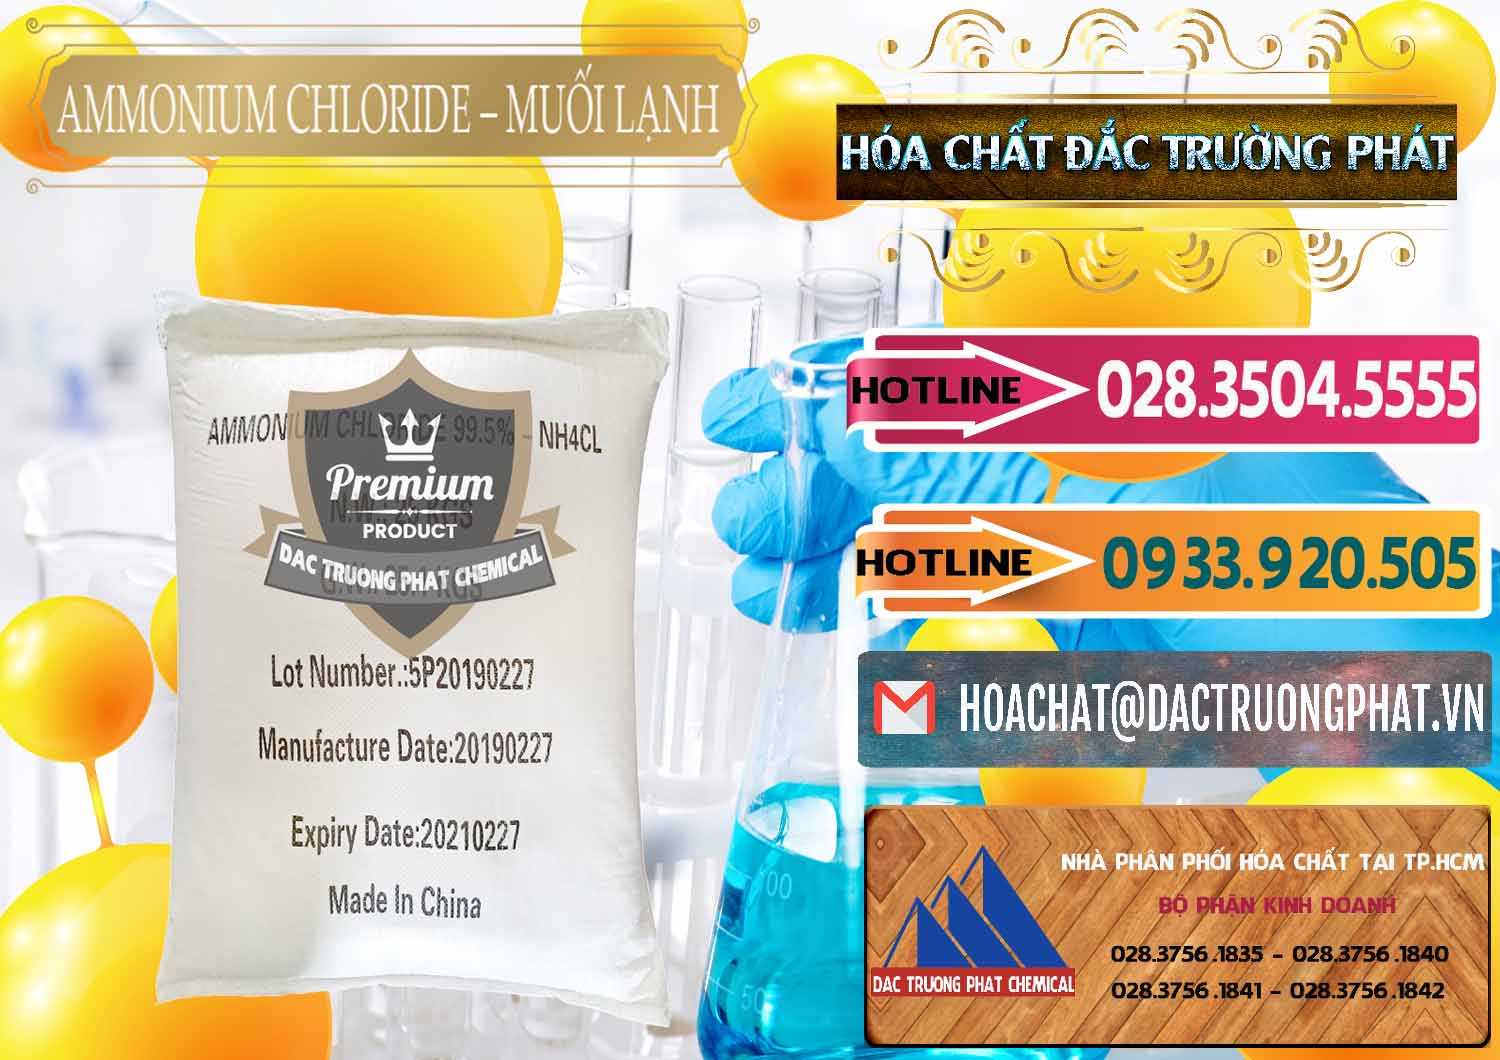 Công ty chuyên bán và cung cấp Ammonium Chloride - Muối Lạnh NH4CL Trung Quốc China - 0021 - Nhà phân phối & nhập khẩu hóa chất tại TP.HCM - dactruongphat.vn